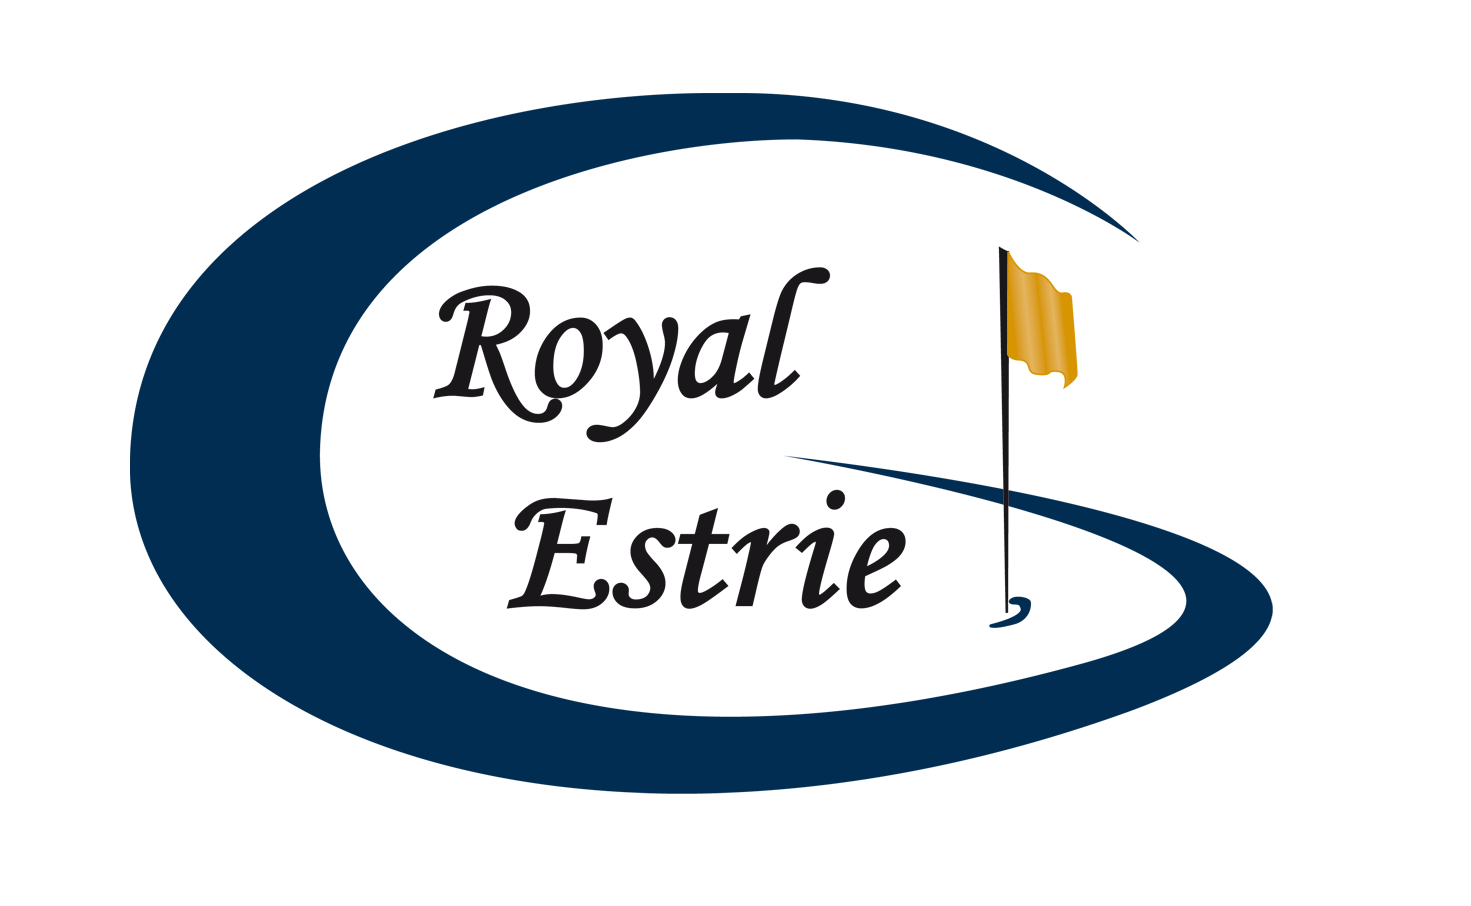 Royal-Estrie-logo